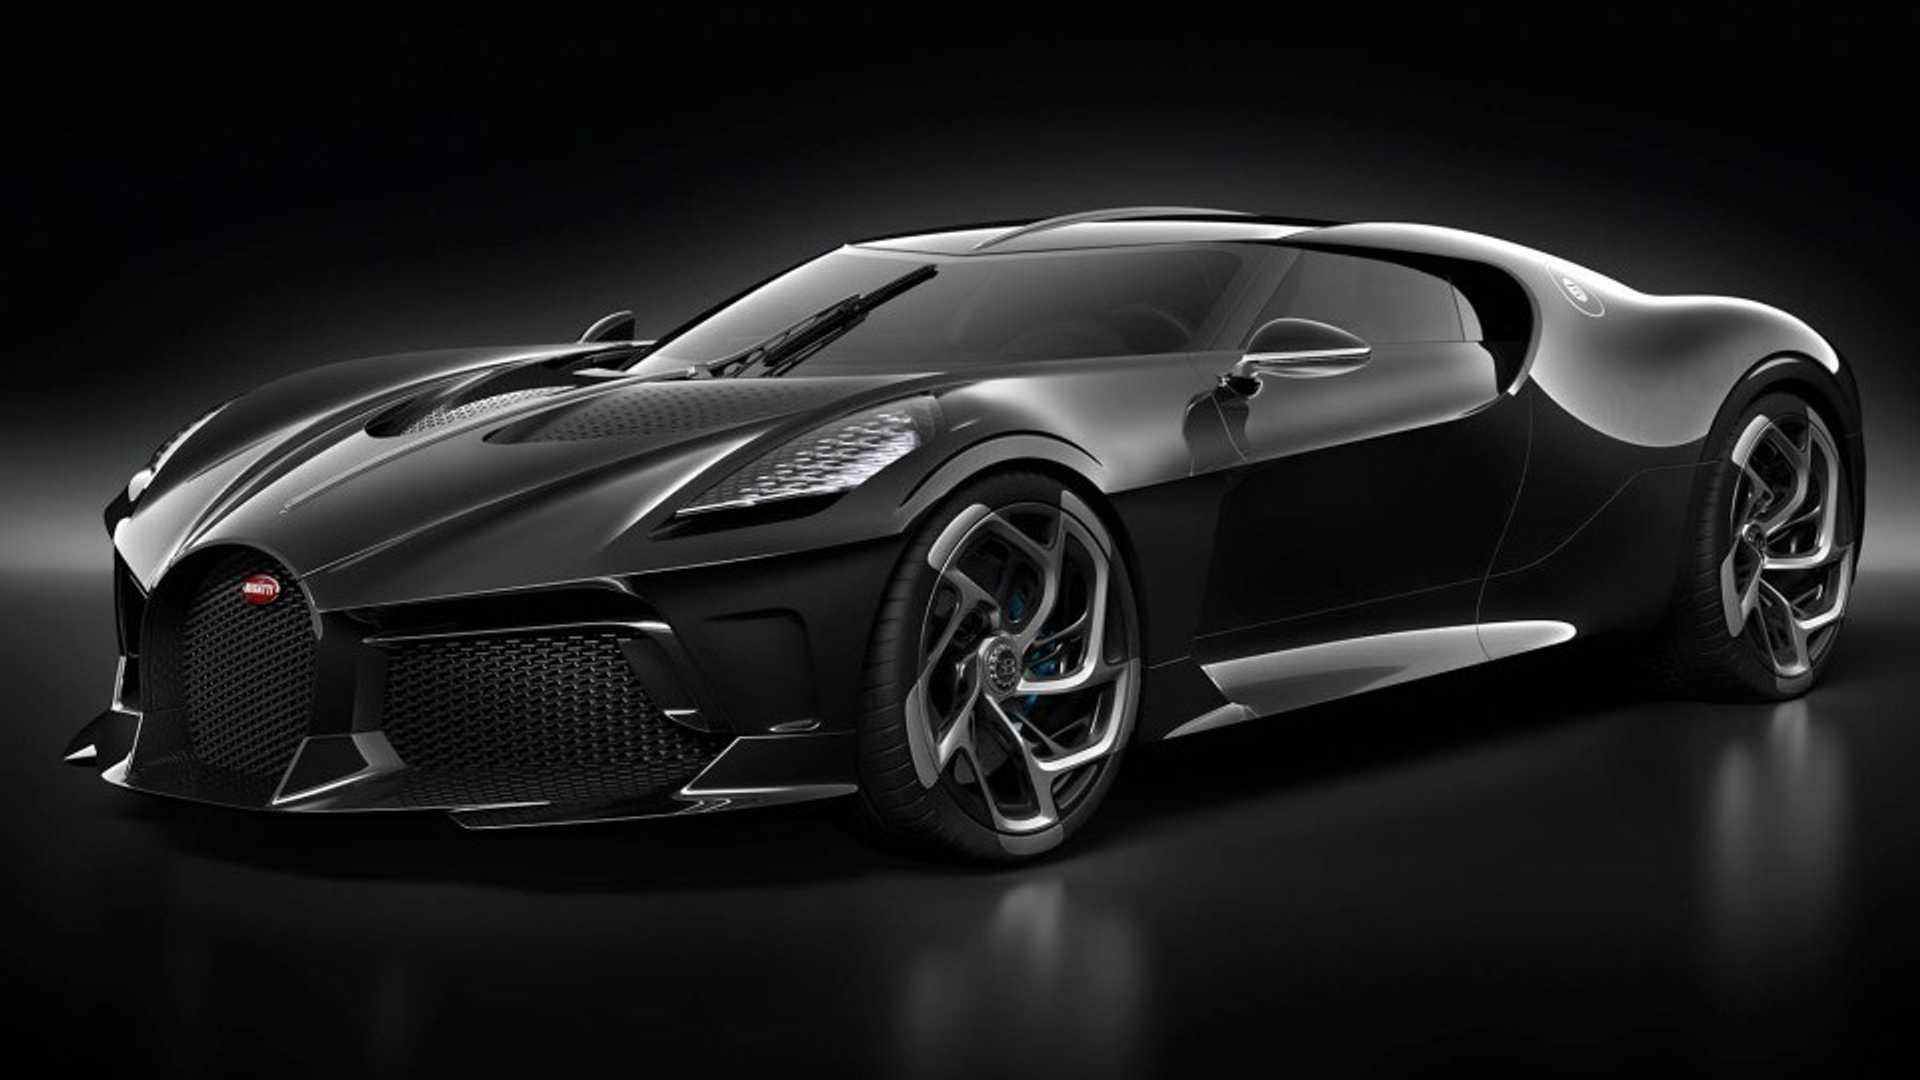 Hãy xem hình ảnh của siêu xe Bugatti La Voiture Noire để cảm nhận sự đẳng cấp vượt trội của dòng xe này. Với giá trị 18 triệu euro, siêu xe này là biểu tượng cho sự sang trọng và đẳng cấp.